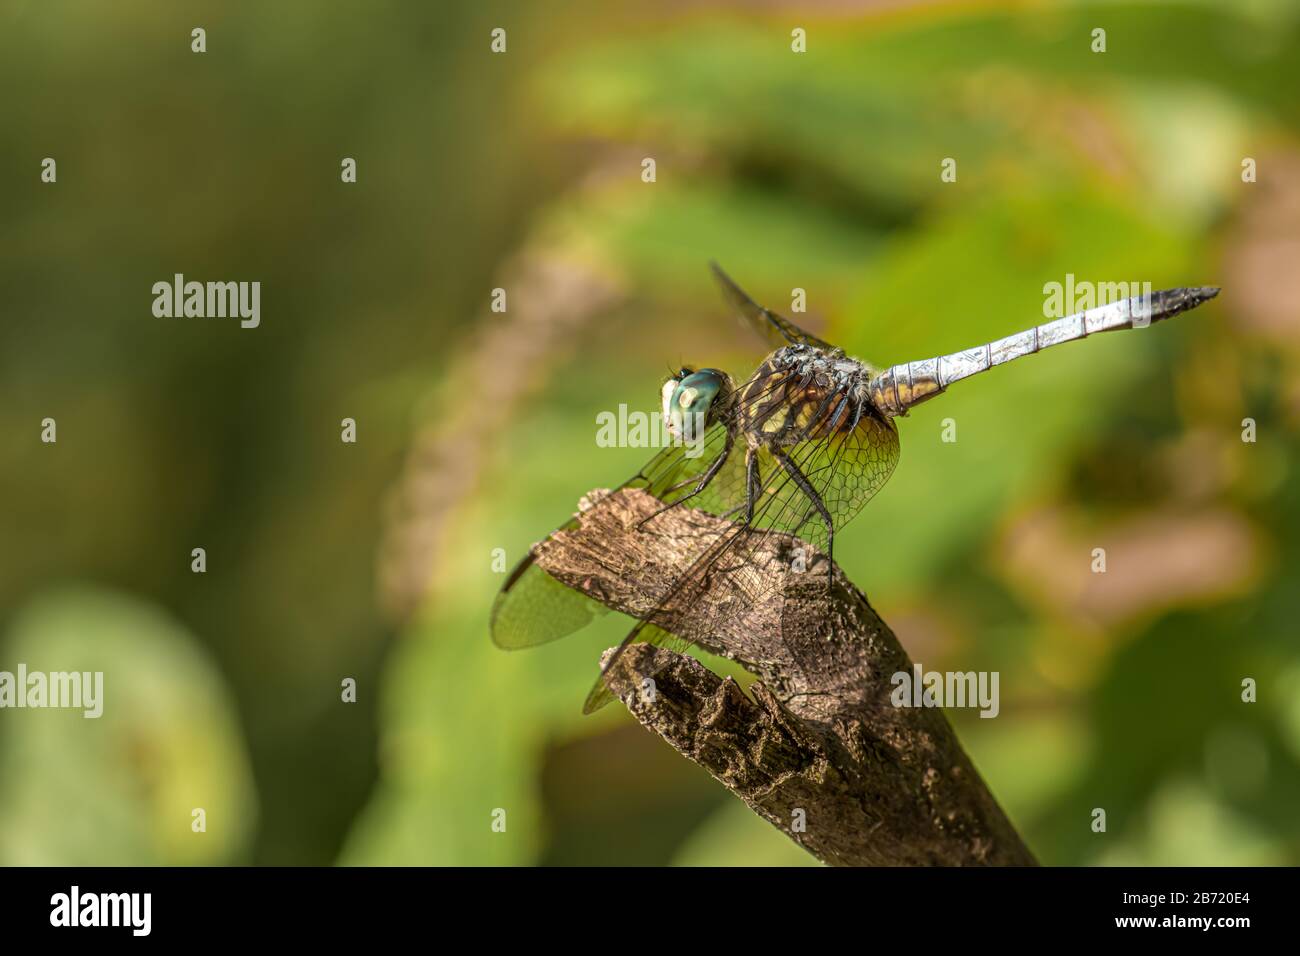 Gros plan d'une simple libellule avec des yeux renflés perchés sur un morceau de vieux bois et un fond vert flou. Banque D'Images